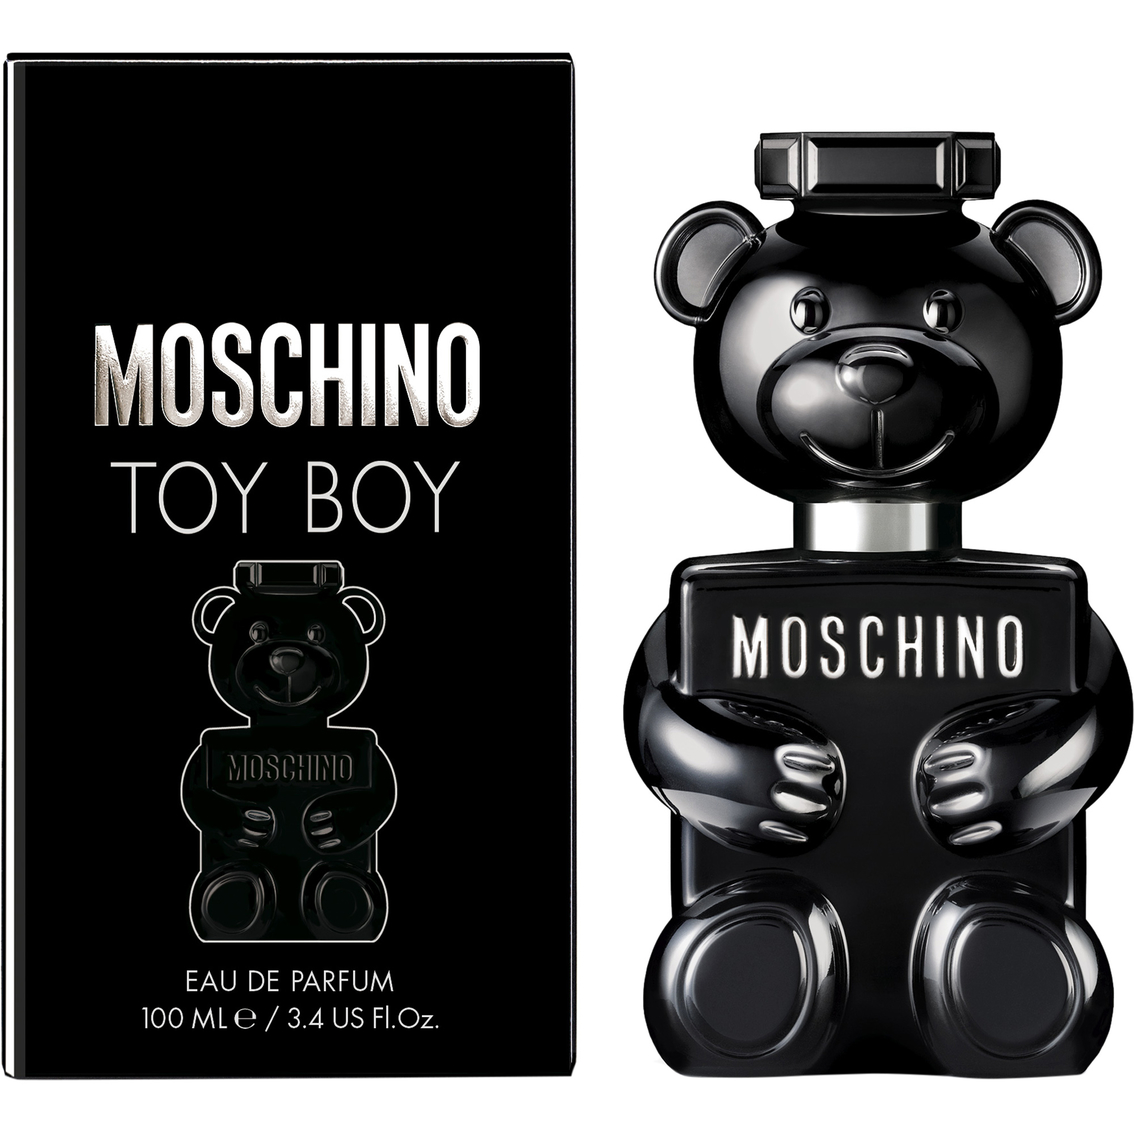 Moschino Toy Boy Eau De Parfum - Image 2 of 2